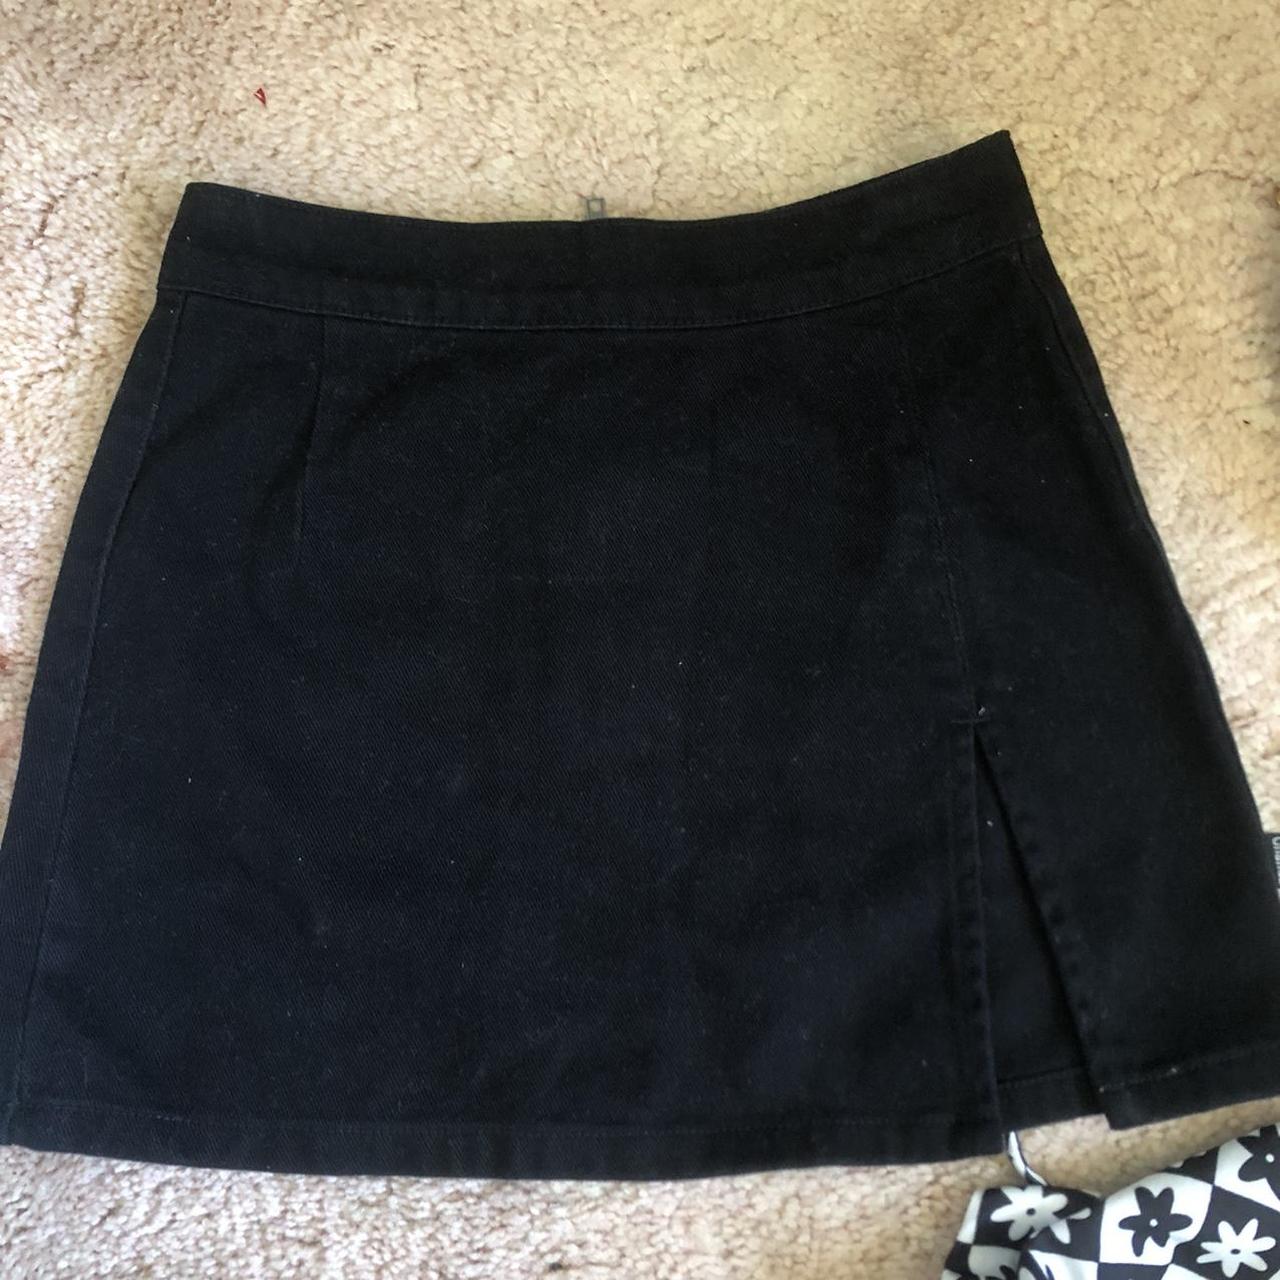 Black Ghanda Mini Skirt with slit 🖤 • Size 6 only... - Depop